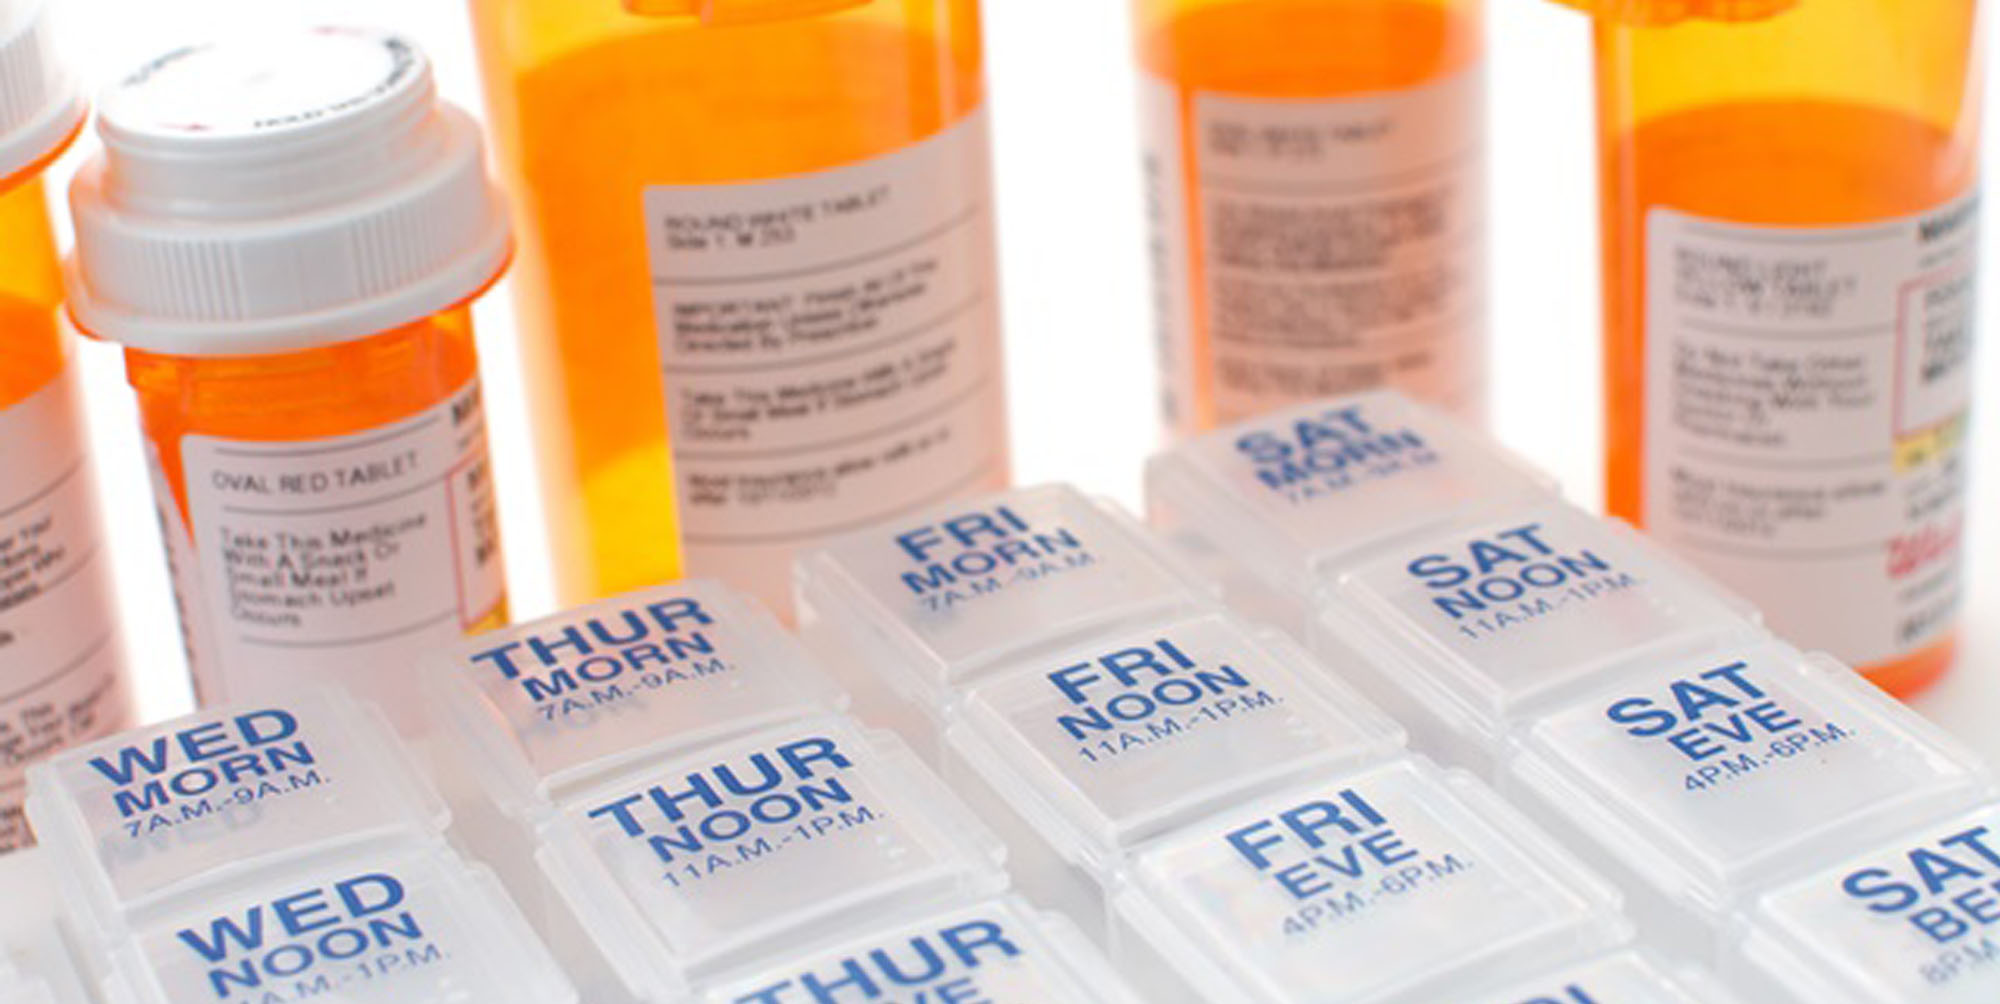 Medication dispenser and organized pill bottles